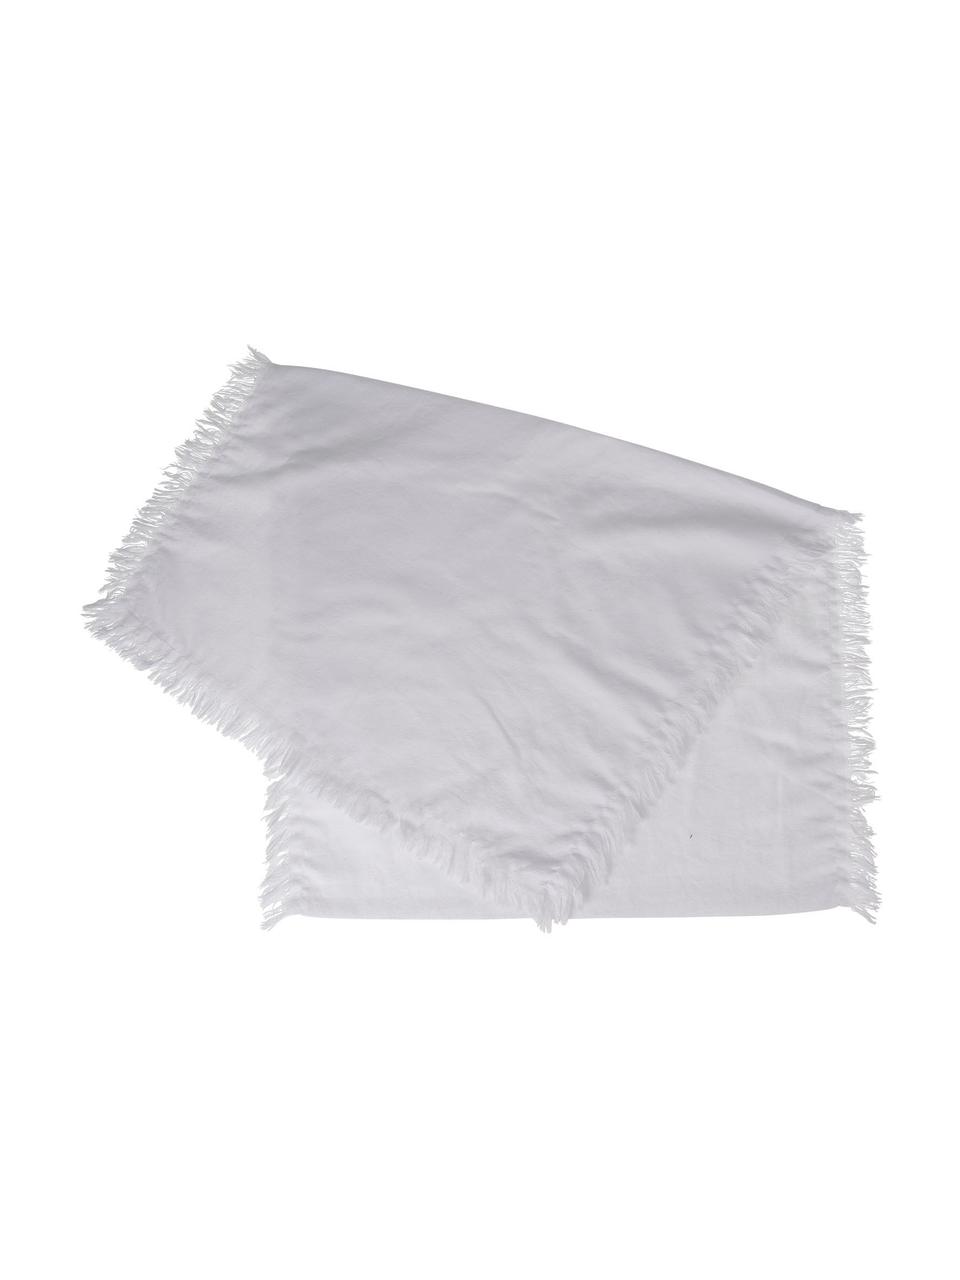 Chemin de table pur coton à franges blanc Nalia, 100 % coton, Blanc, larg. 50 x long. 160 cm